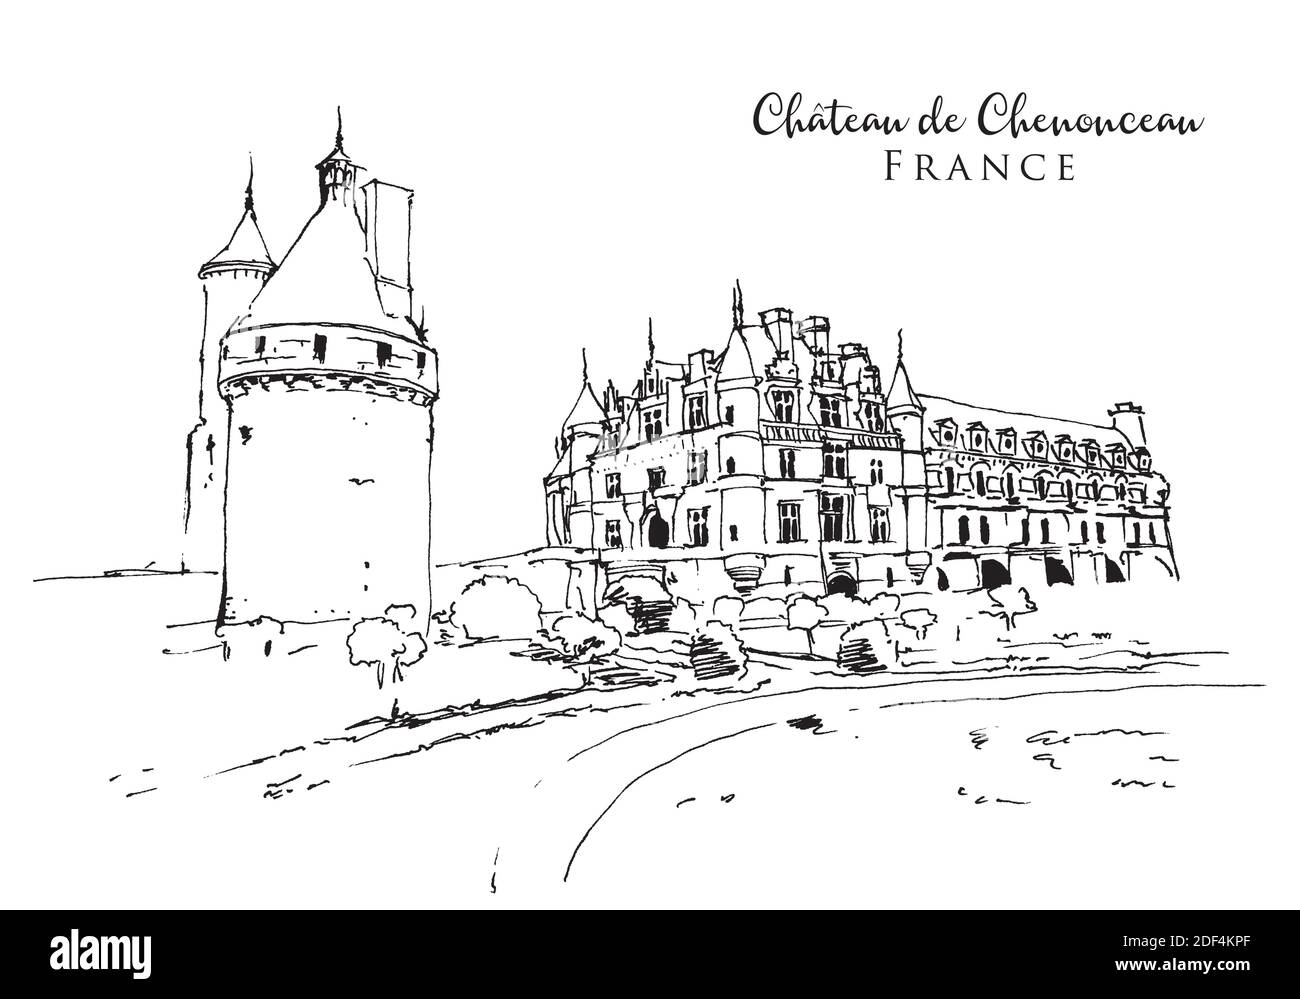 Illustration vectorielle dessinée à la main du château de Chenonceau Vallée de la Loire en France Illustration de Vecteur